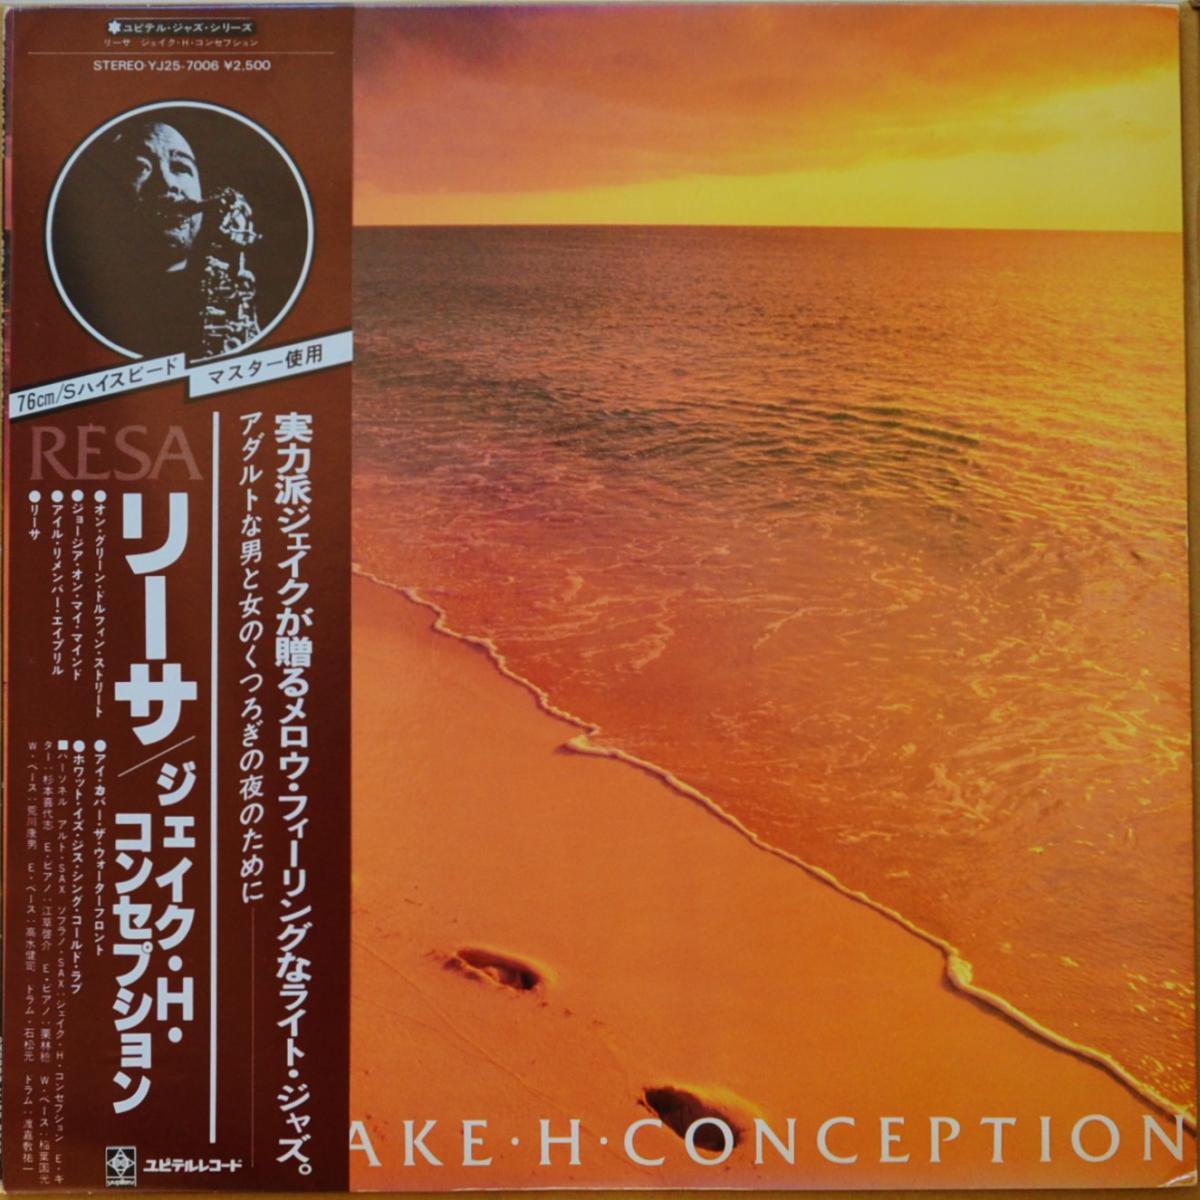 ジェイク・H・コンセプション JAKE H. CONCEPCION ‎/ リーサ RESA (LP)